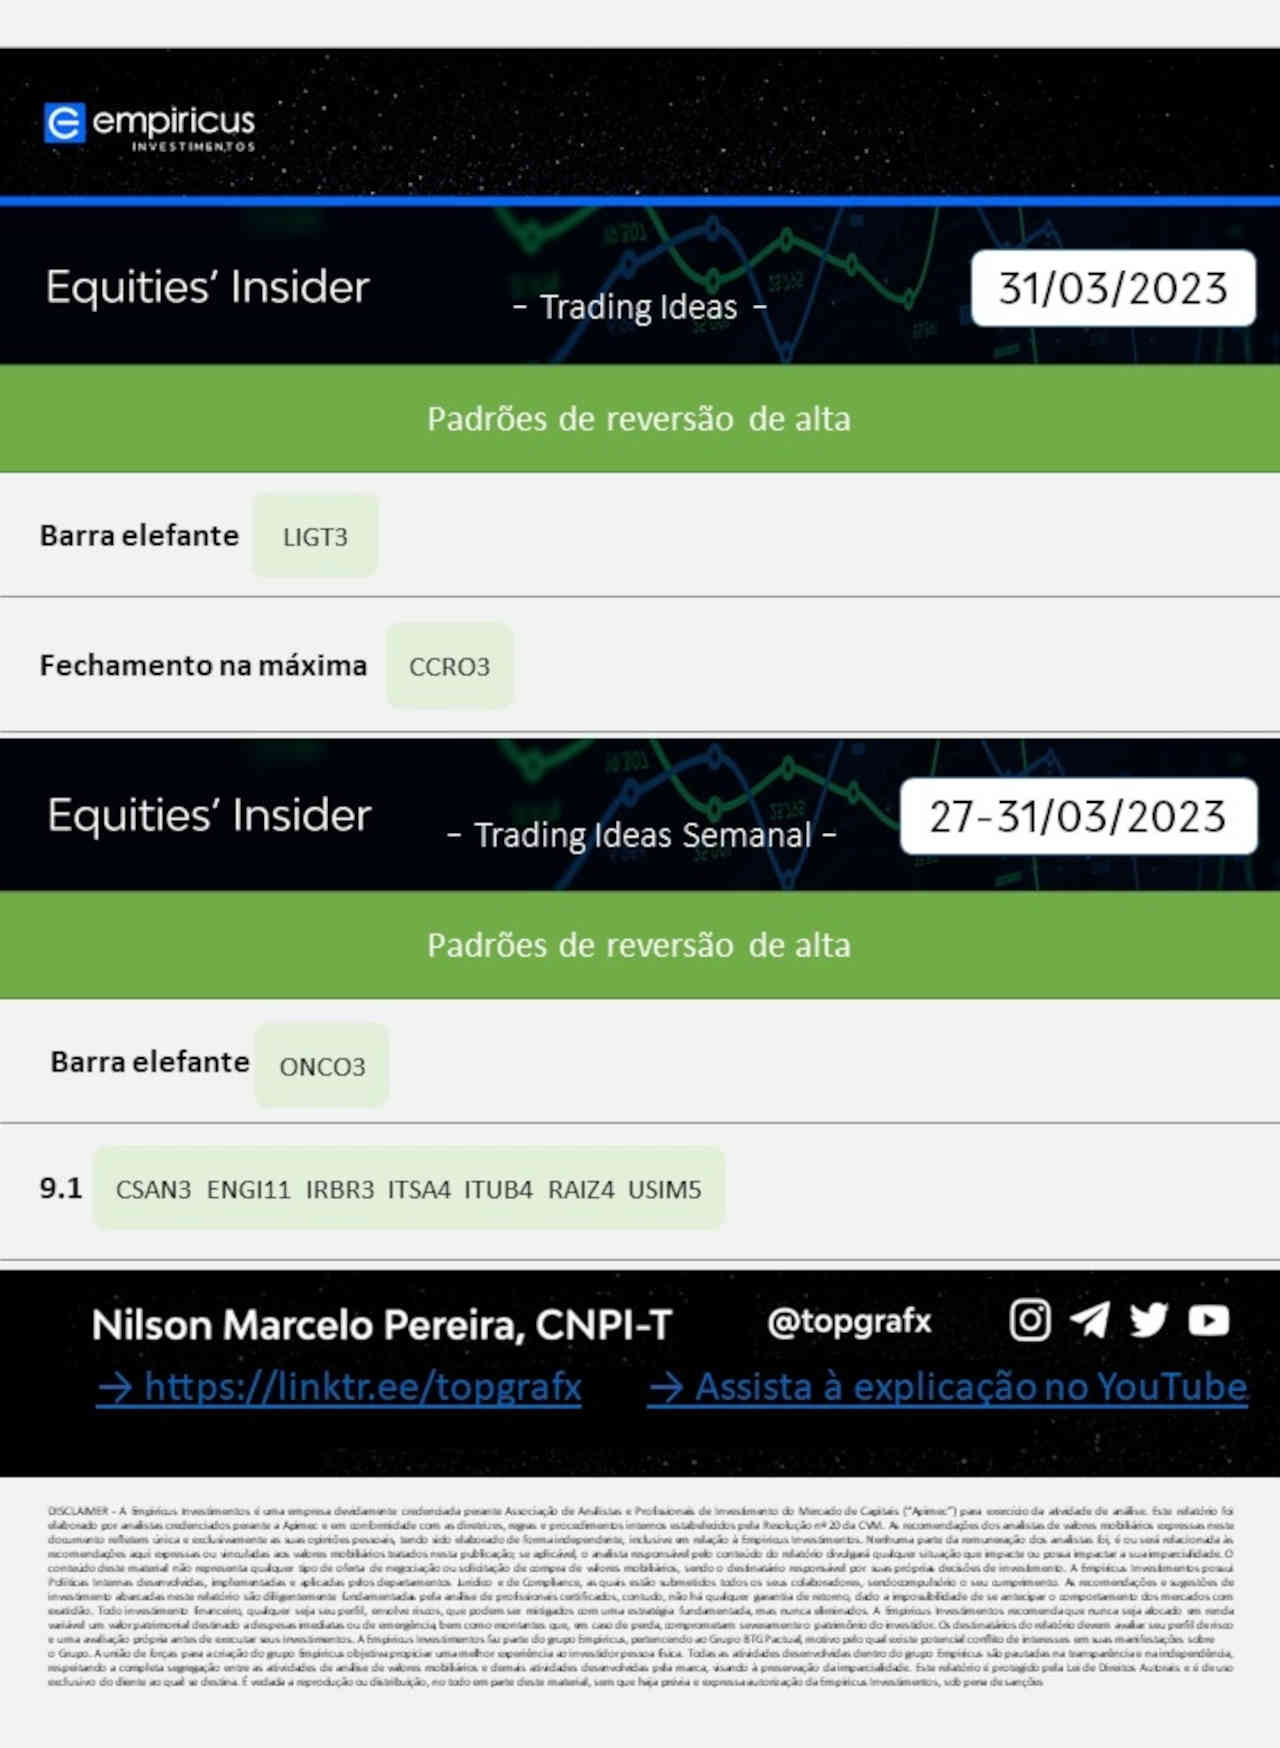 equities insider day trade trader ibovespa hoje 03 abril 2023 melhores ações investir comprar vender negociar swing trading mercados investimentos empiricus